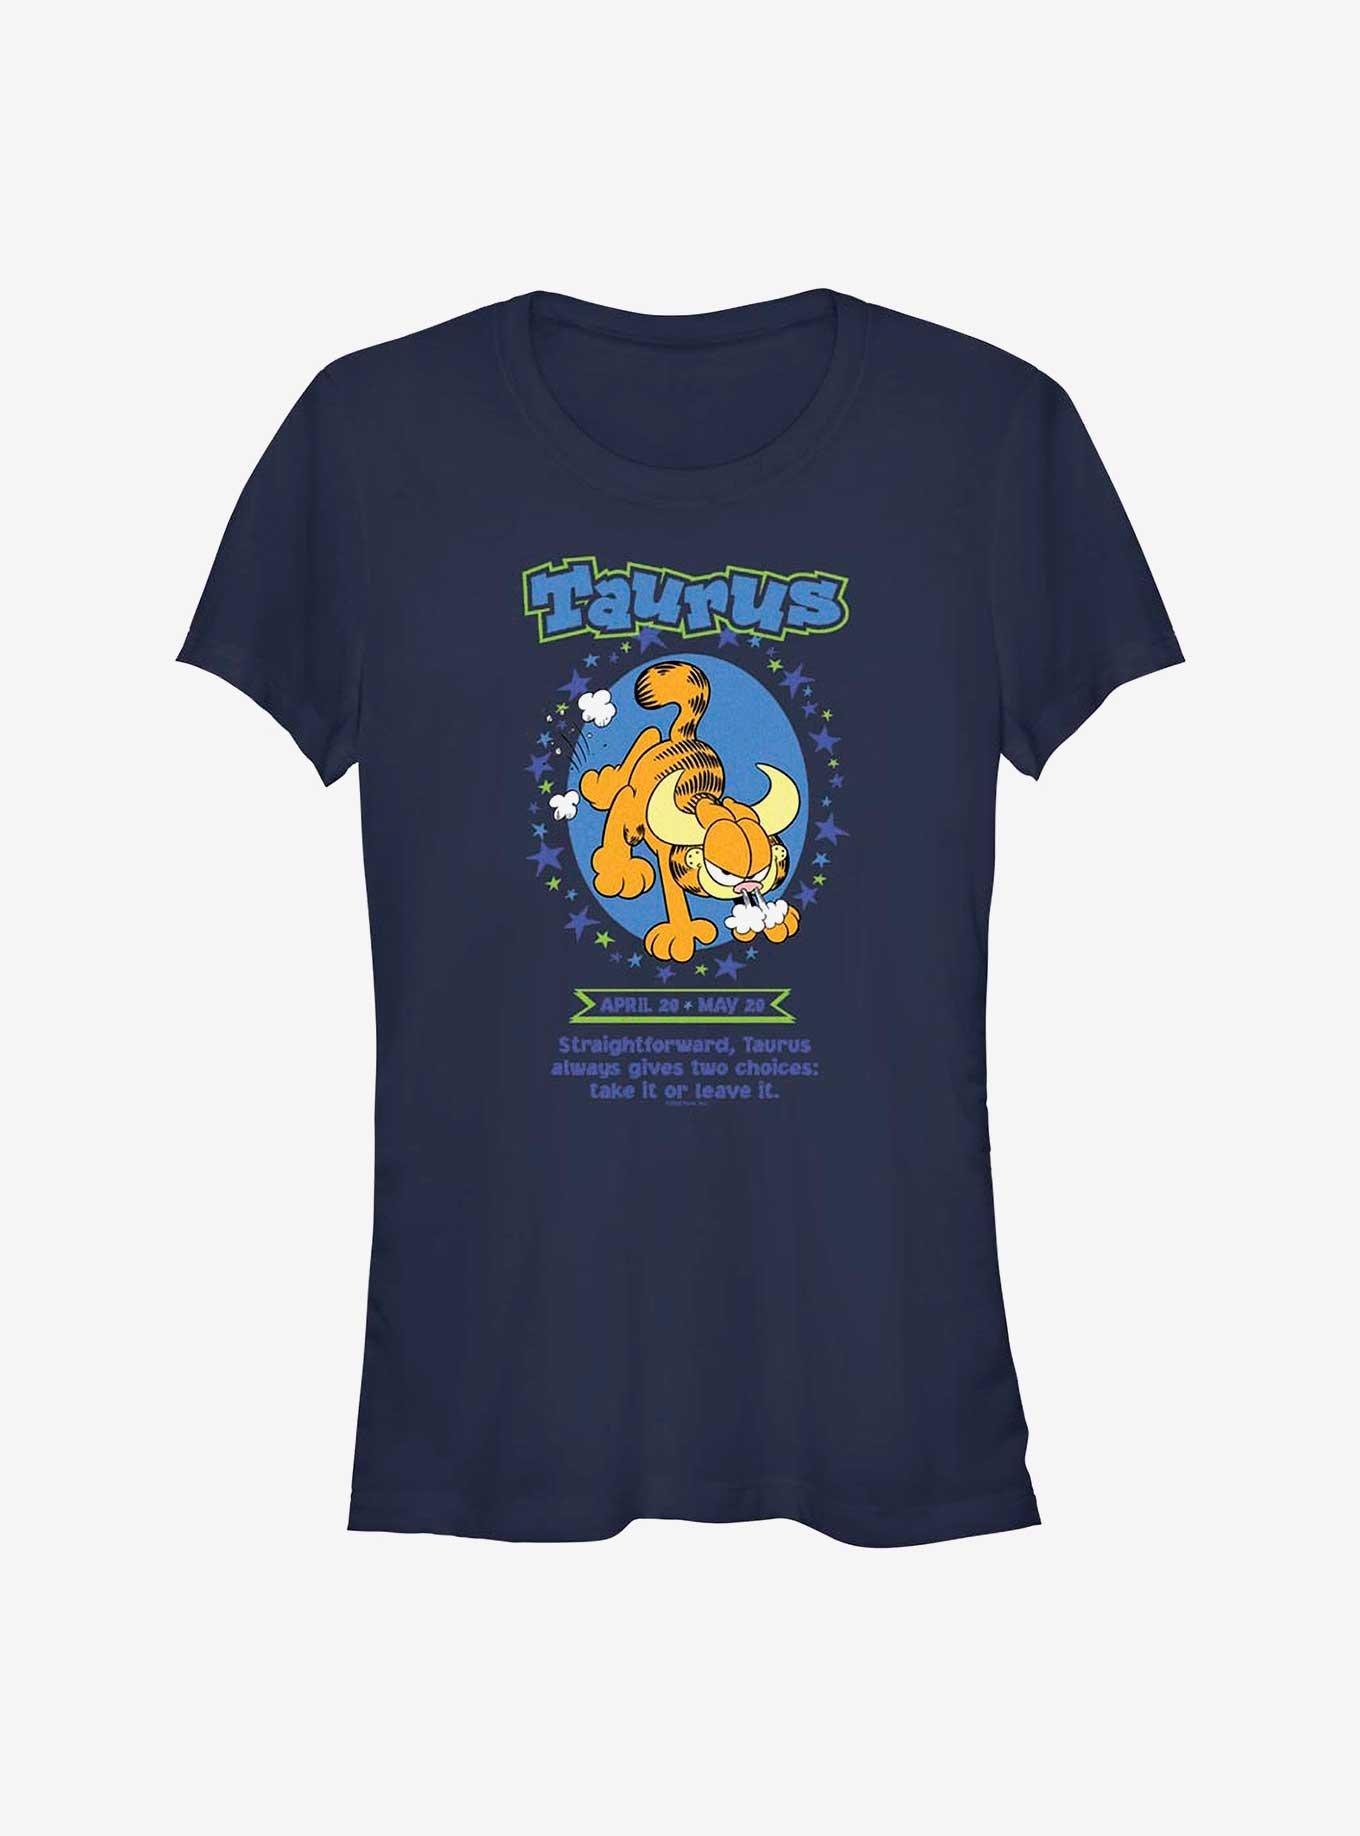 Garfield Taurus Horoscope Girls T-Shirt, NAVY, hi-res